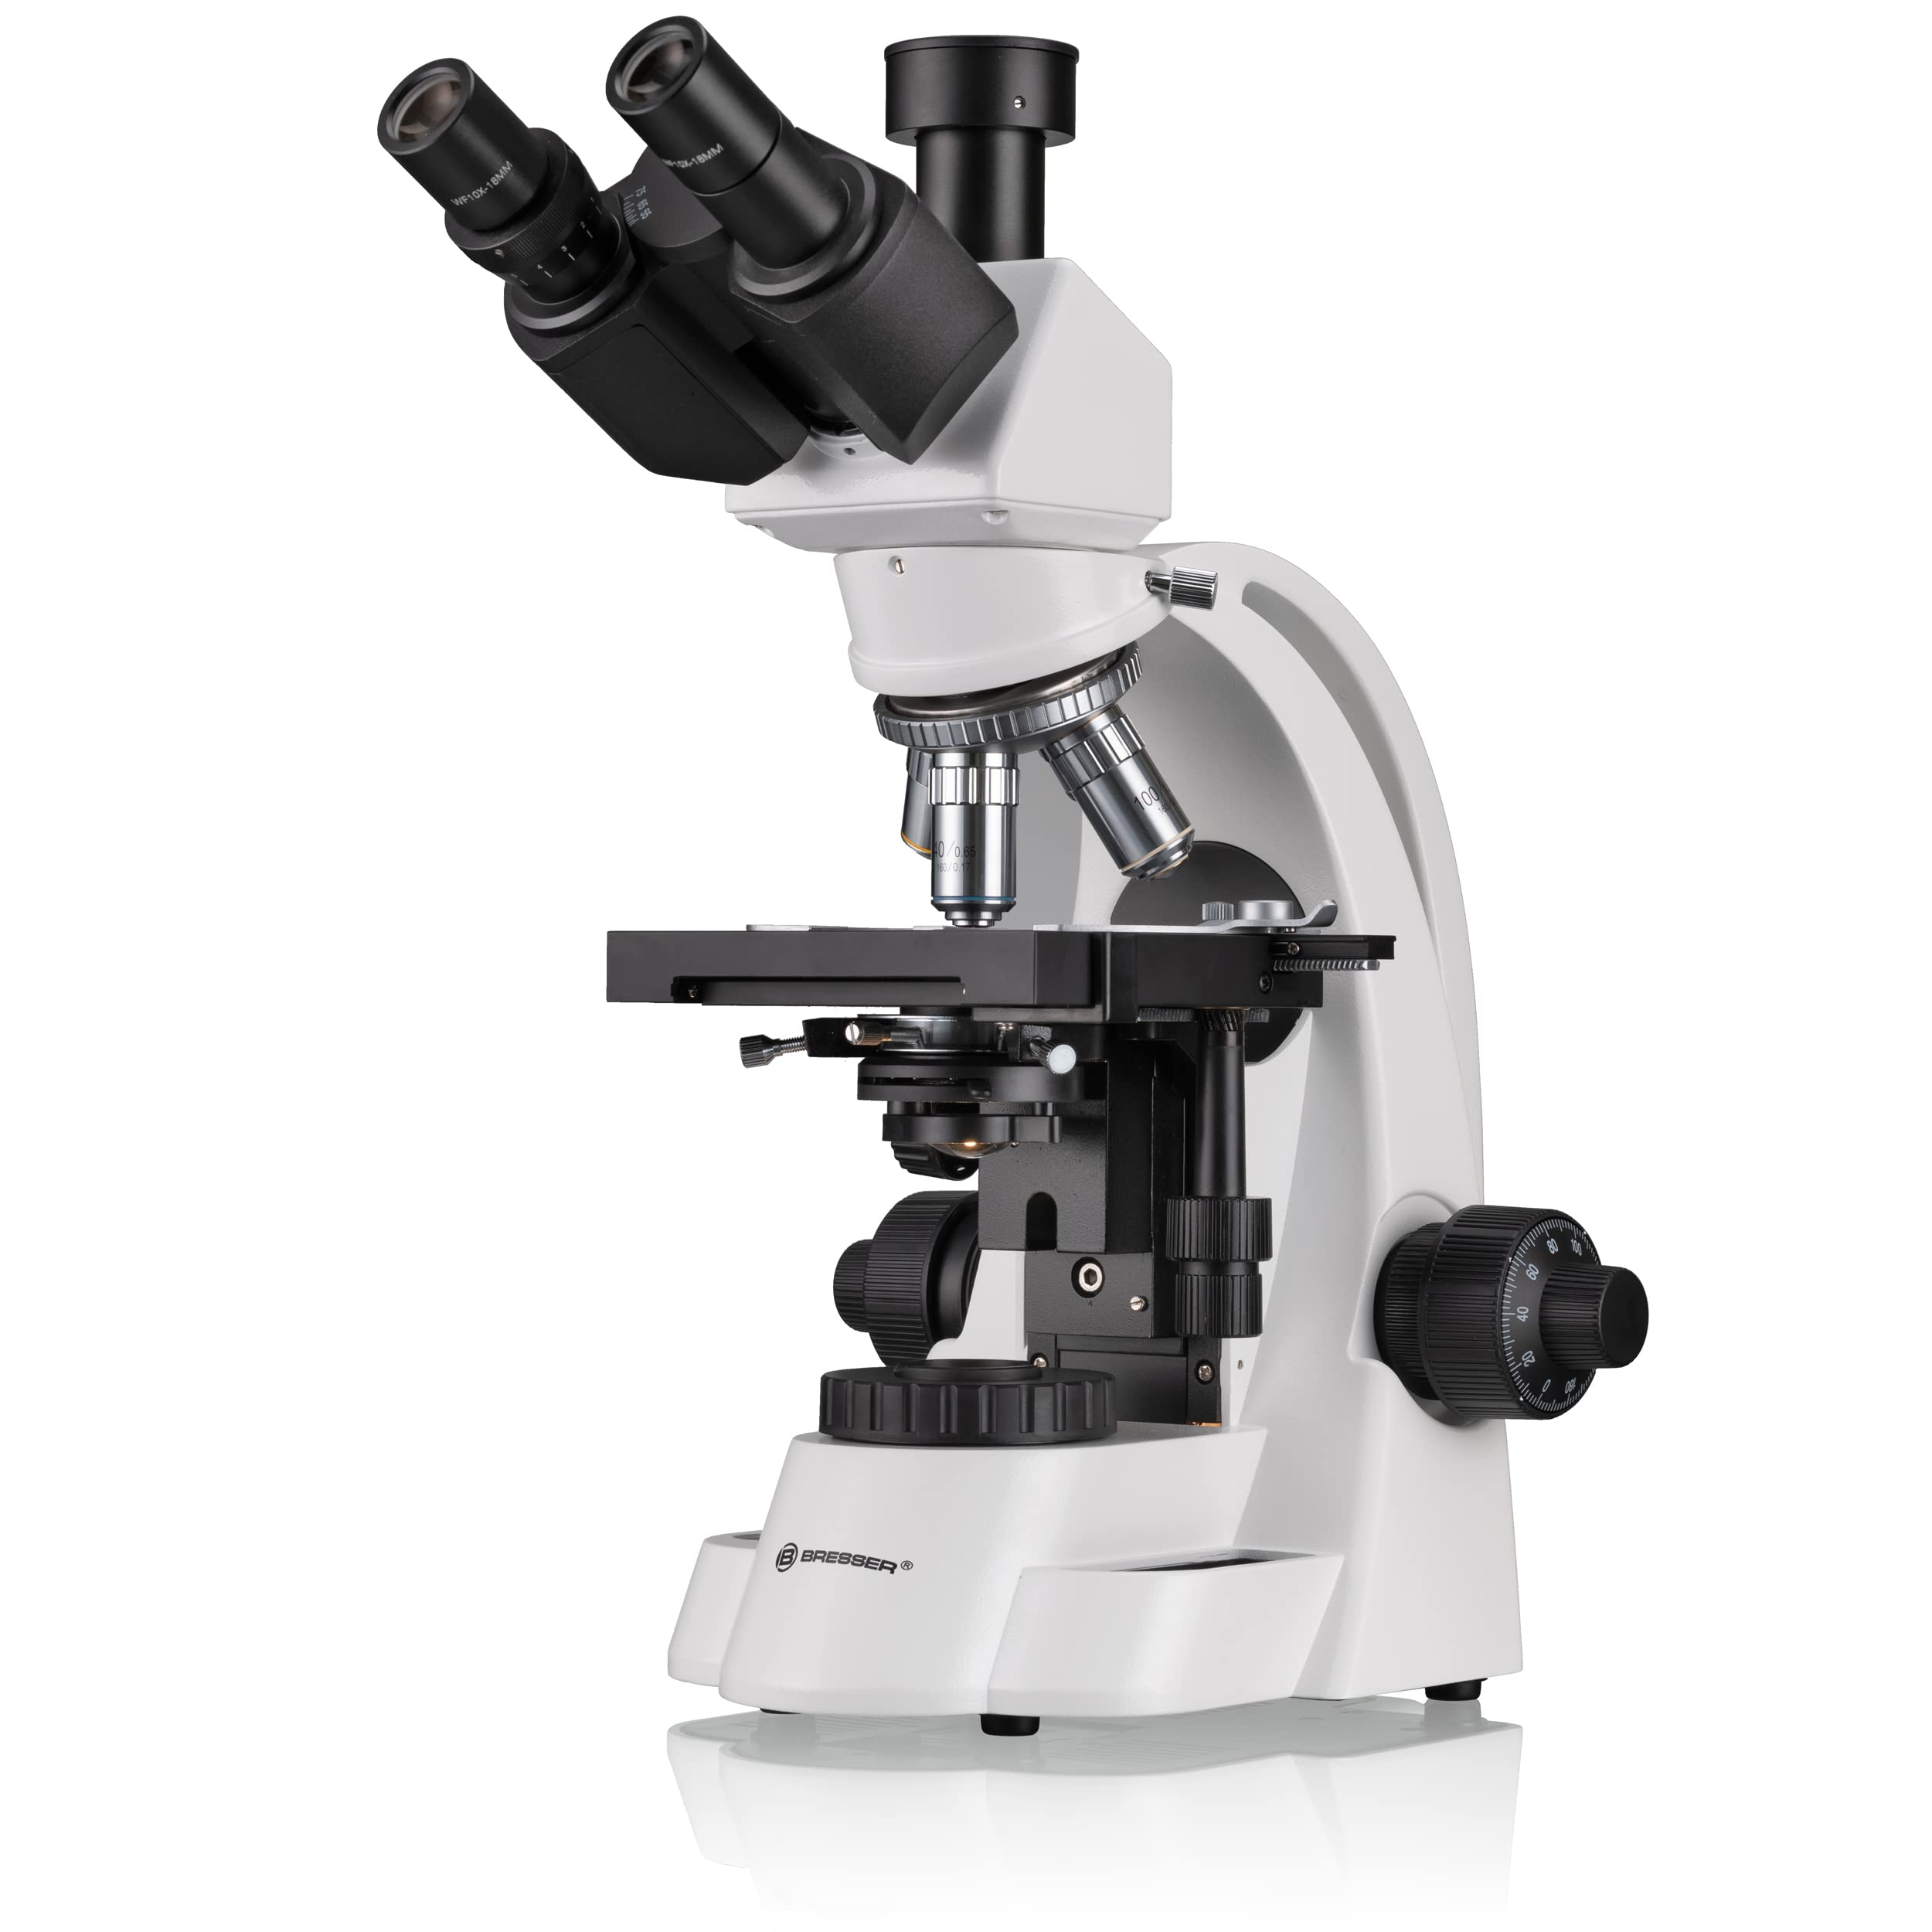 Bresser trinokulares Durchlicht Mikroskop BioScience Trino 40x-1000x Vergrößerung, mit Köhlerscher Beleuchtung, koaxialem Kreuztisch sowie Grob und Feinfokussierung, für gehobene Ansprüche, 5750600